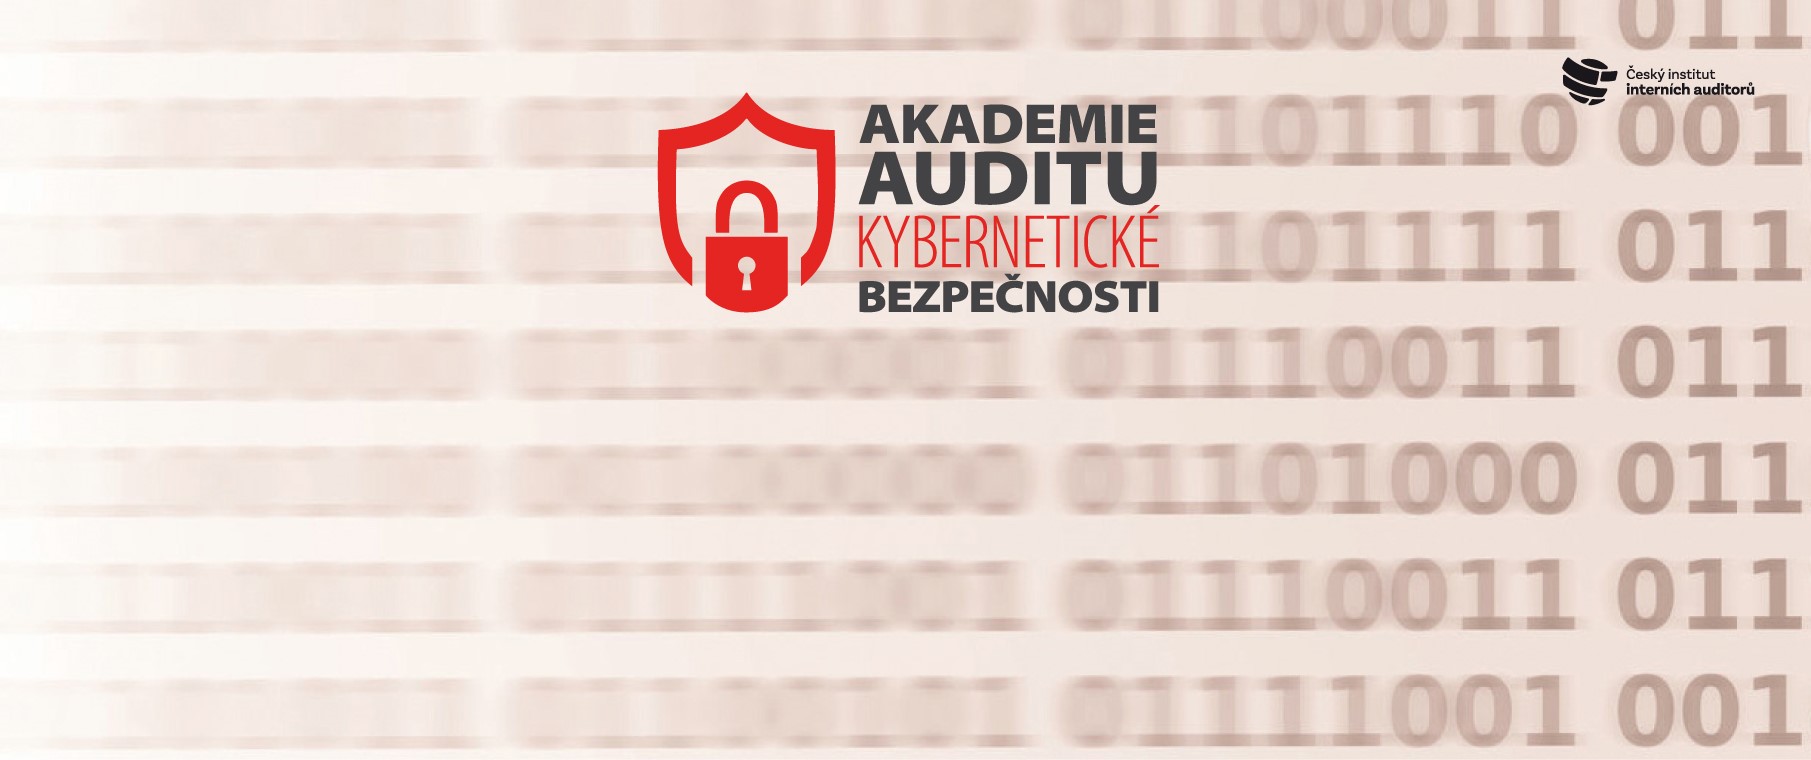 Akademie auditu kybernetické bezpečnosti